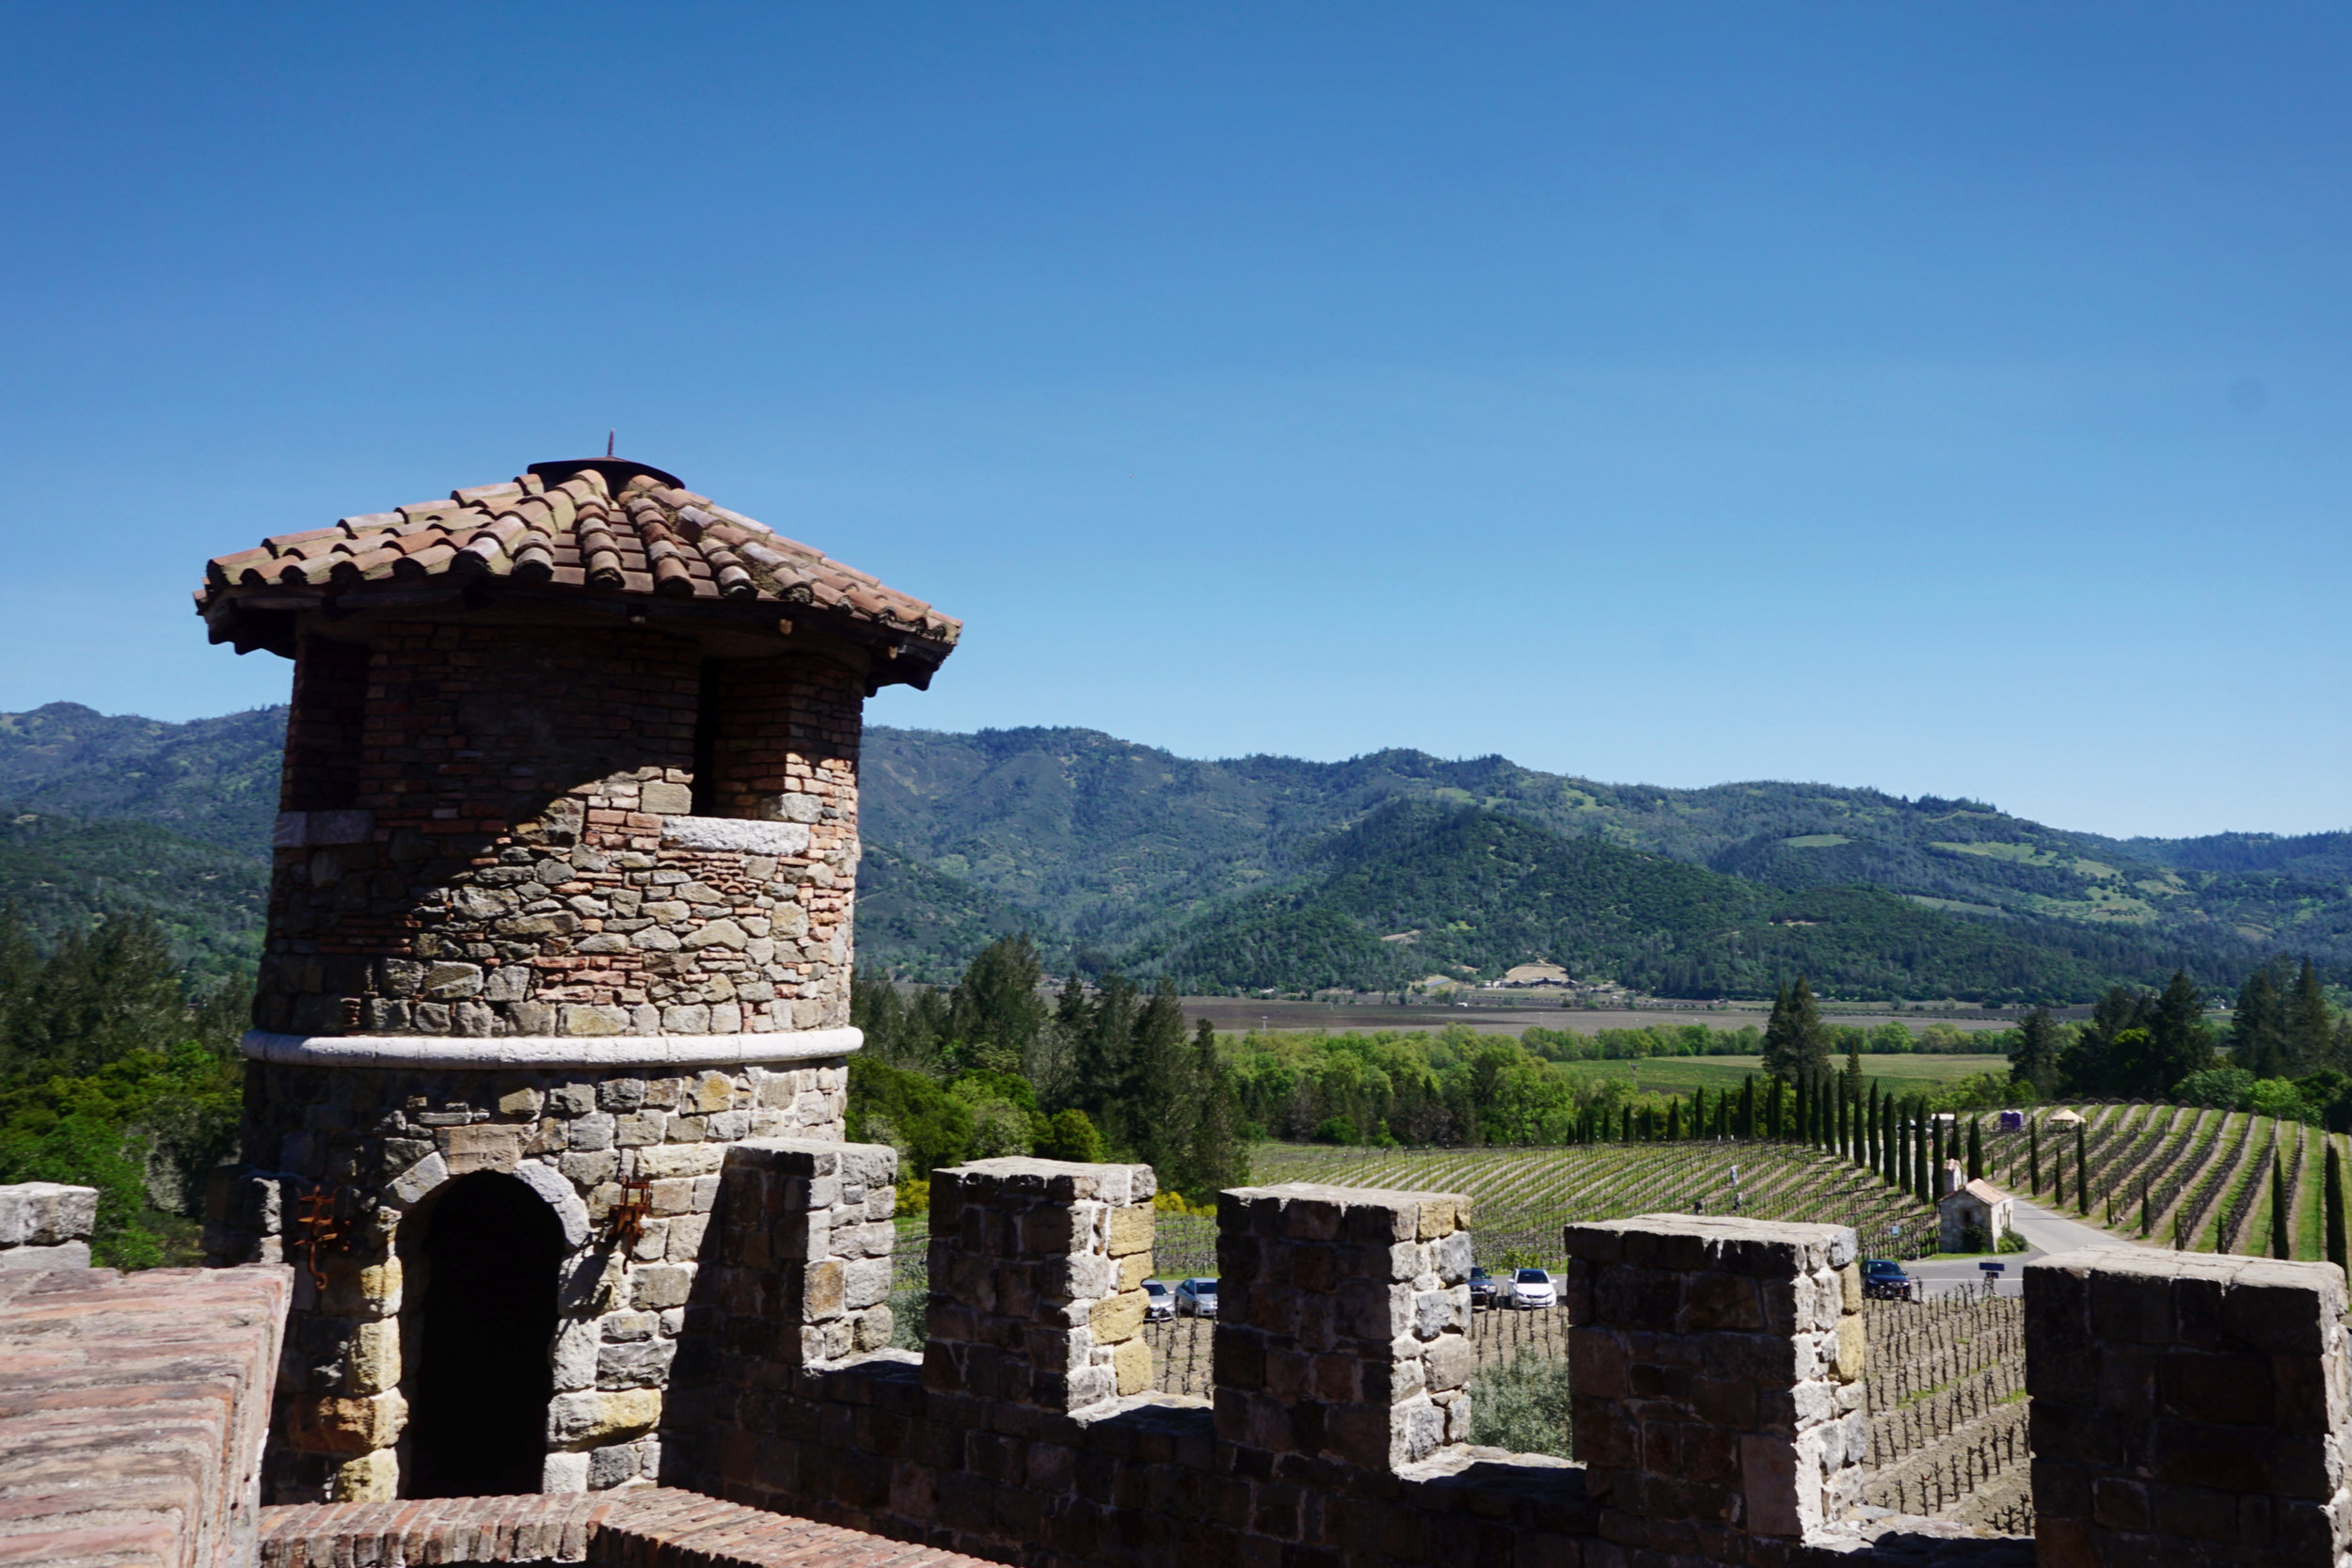 USA_California_Castello di Amorosa Winery_Sonoma_Napa_up in the castle.jpg